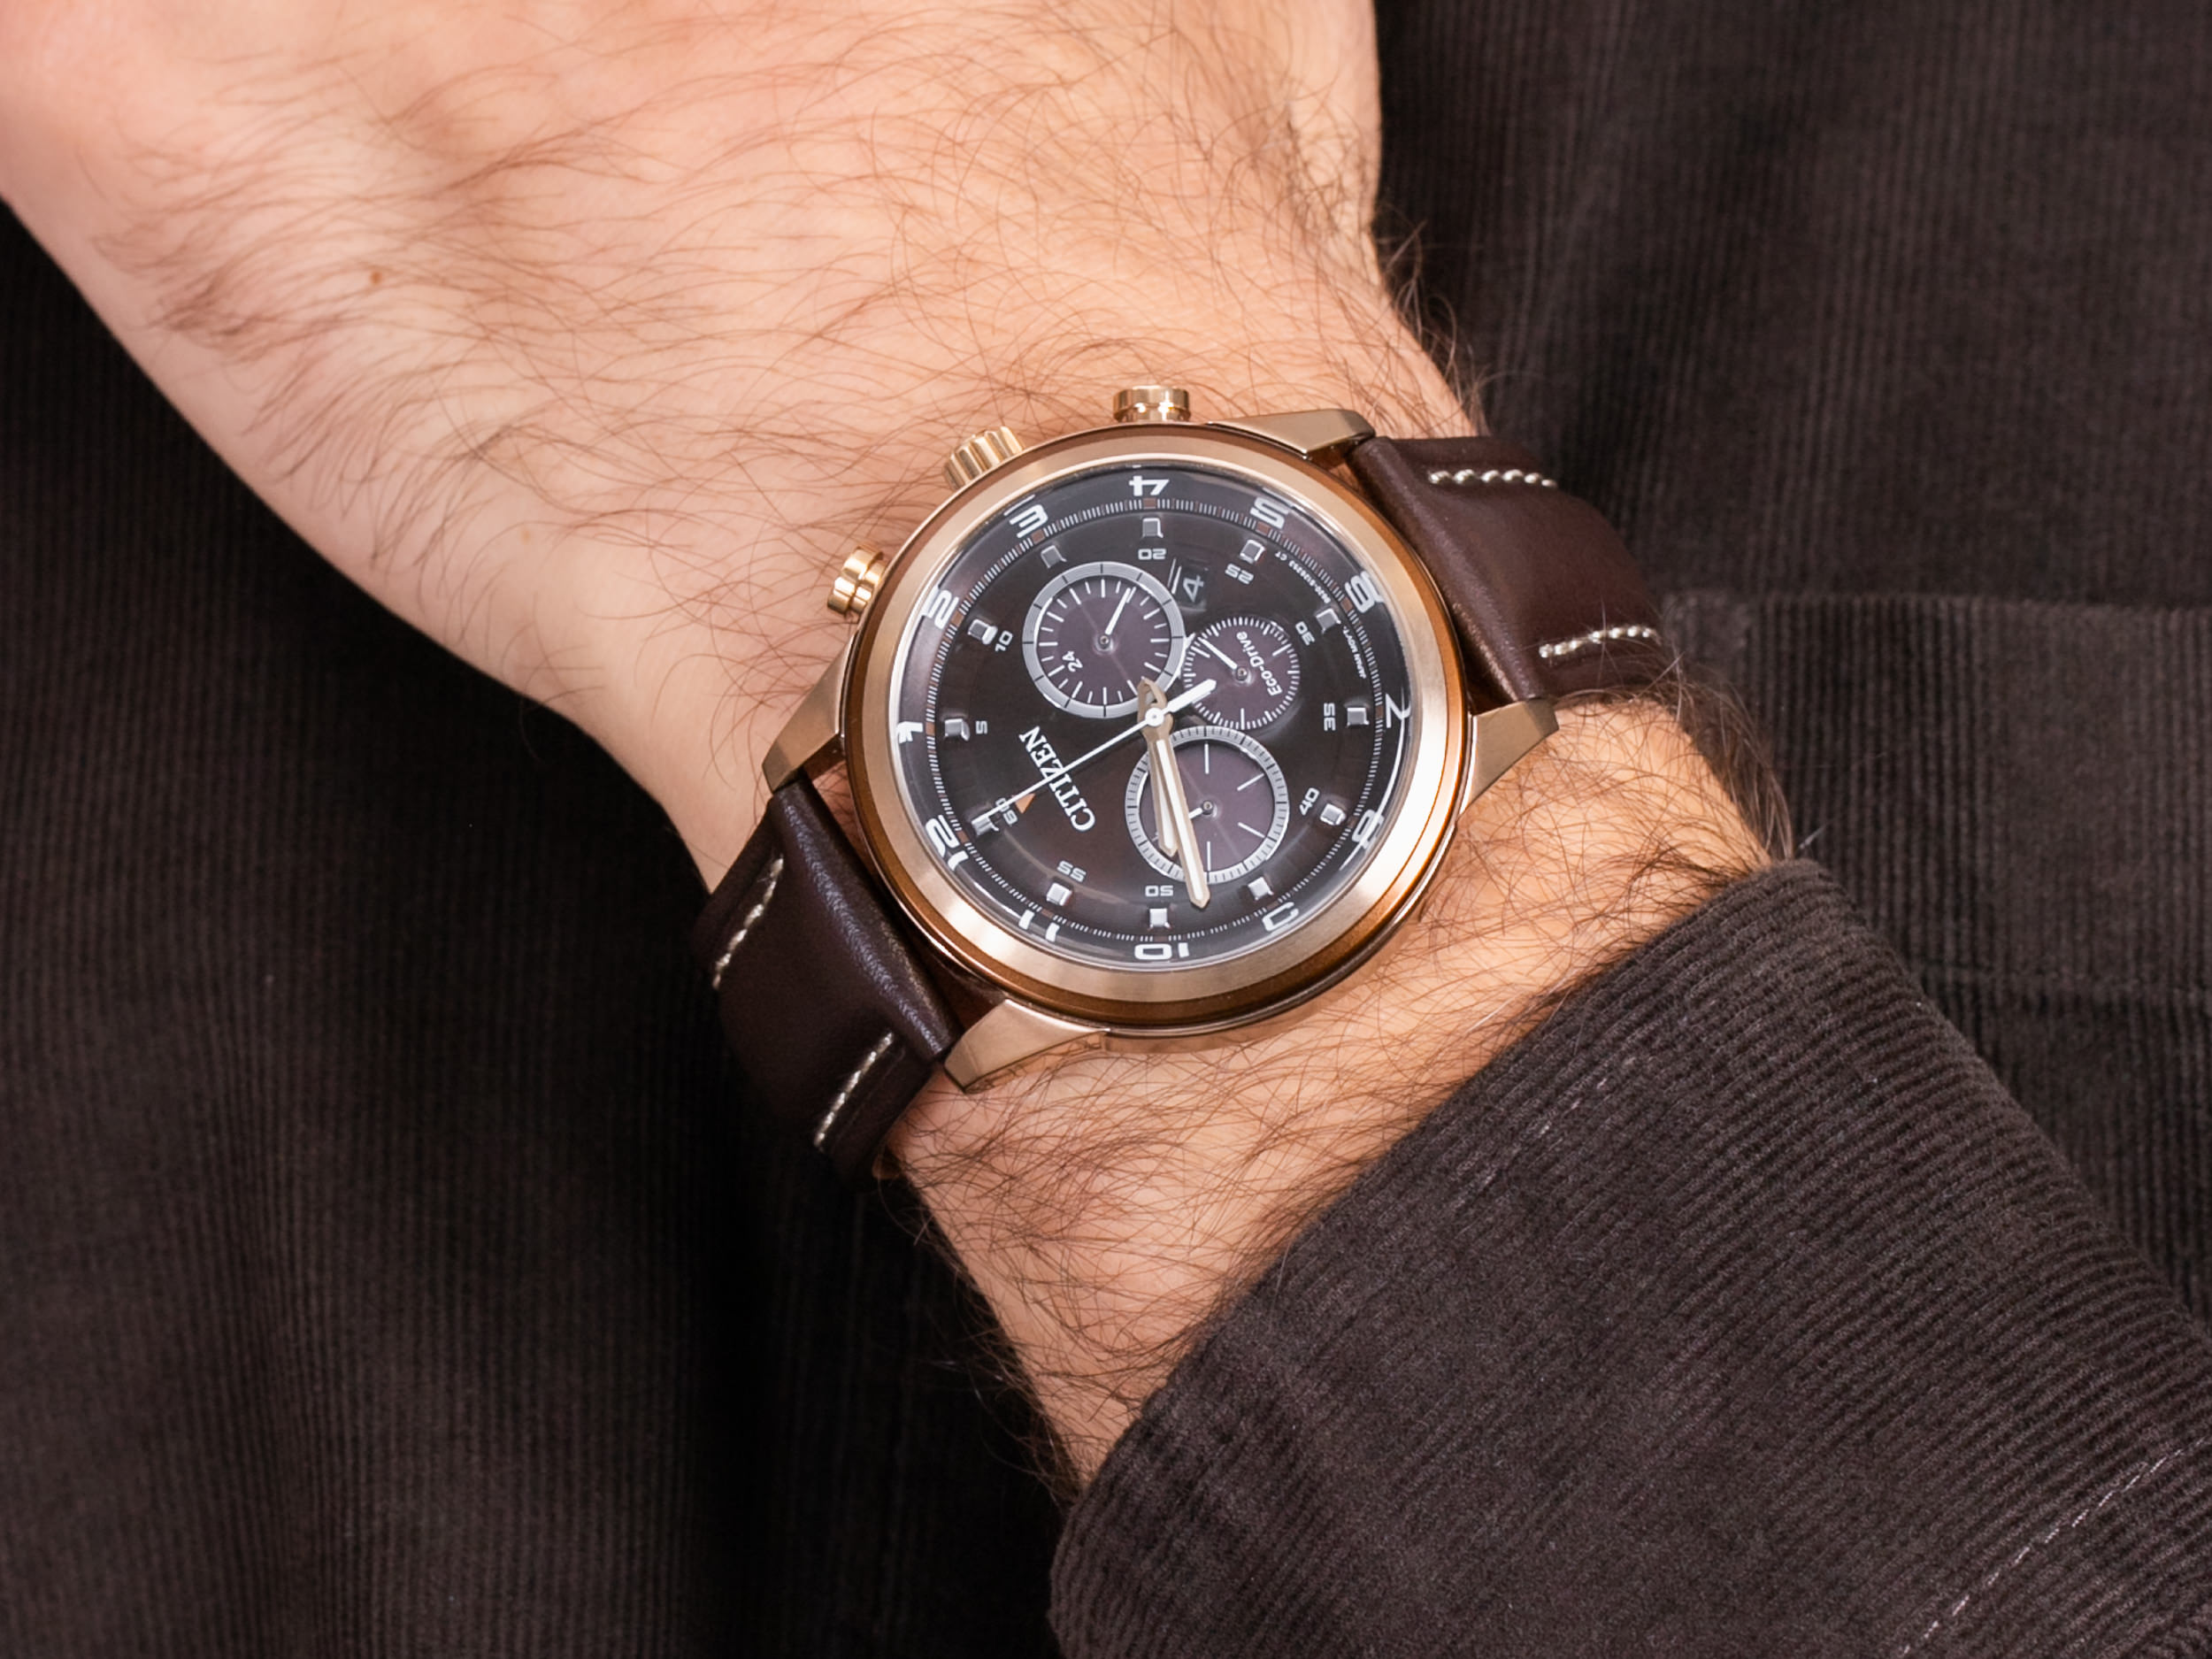 Citizen được đánh giá là thương hiệu đồng hồ có giá trị đứng thứ 6 trên thế giới